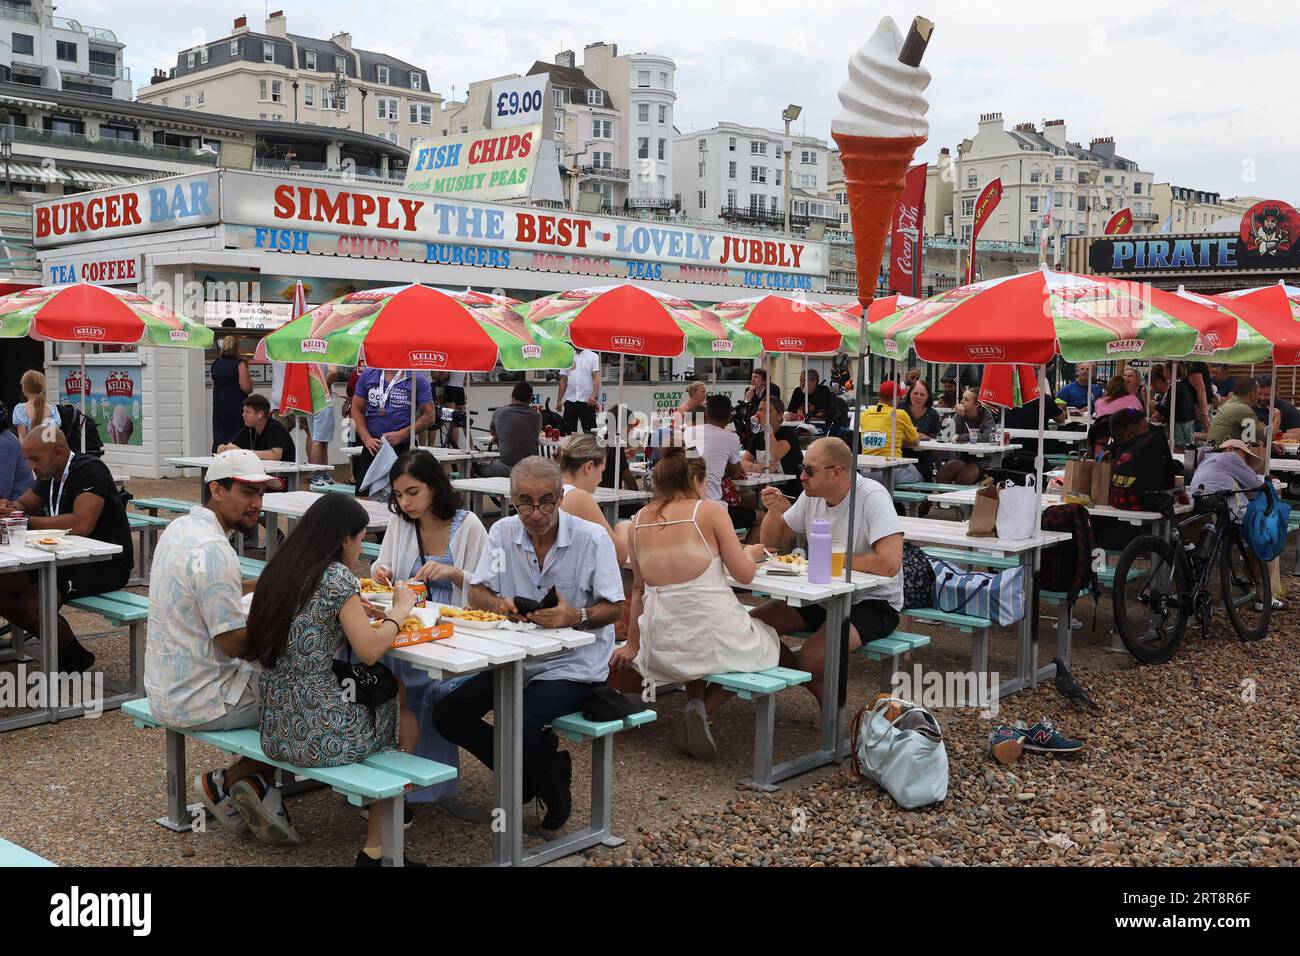 Grupos de personas comiendo comida en un restaurante de pescado y patatas fritas en el paseo marítimo de Brighton Foto de stock